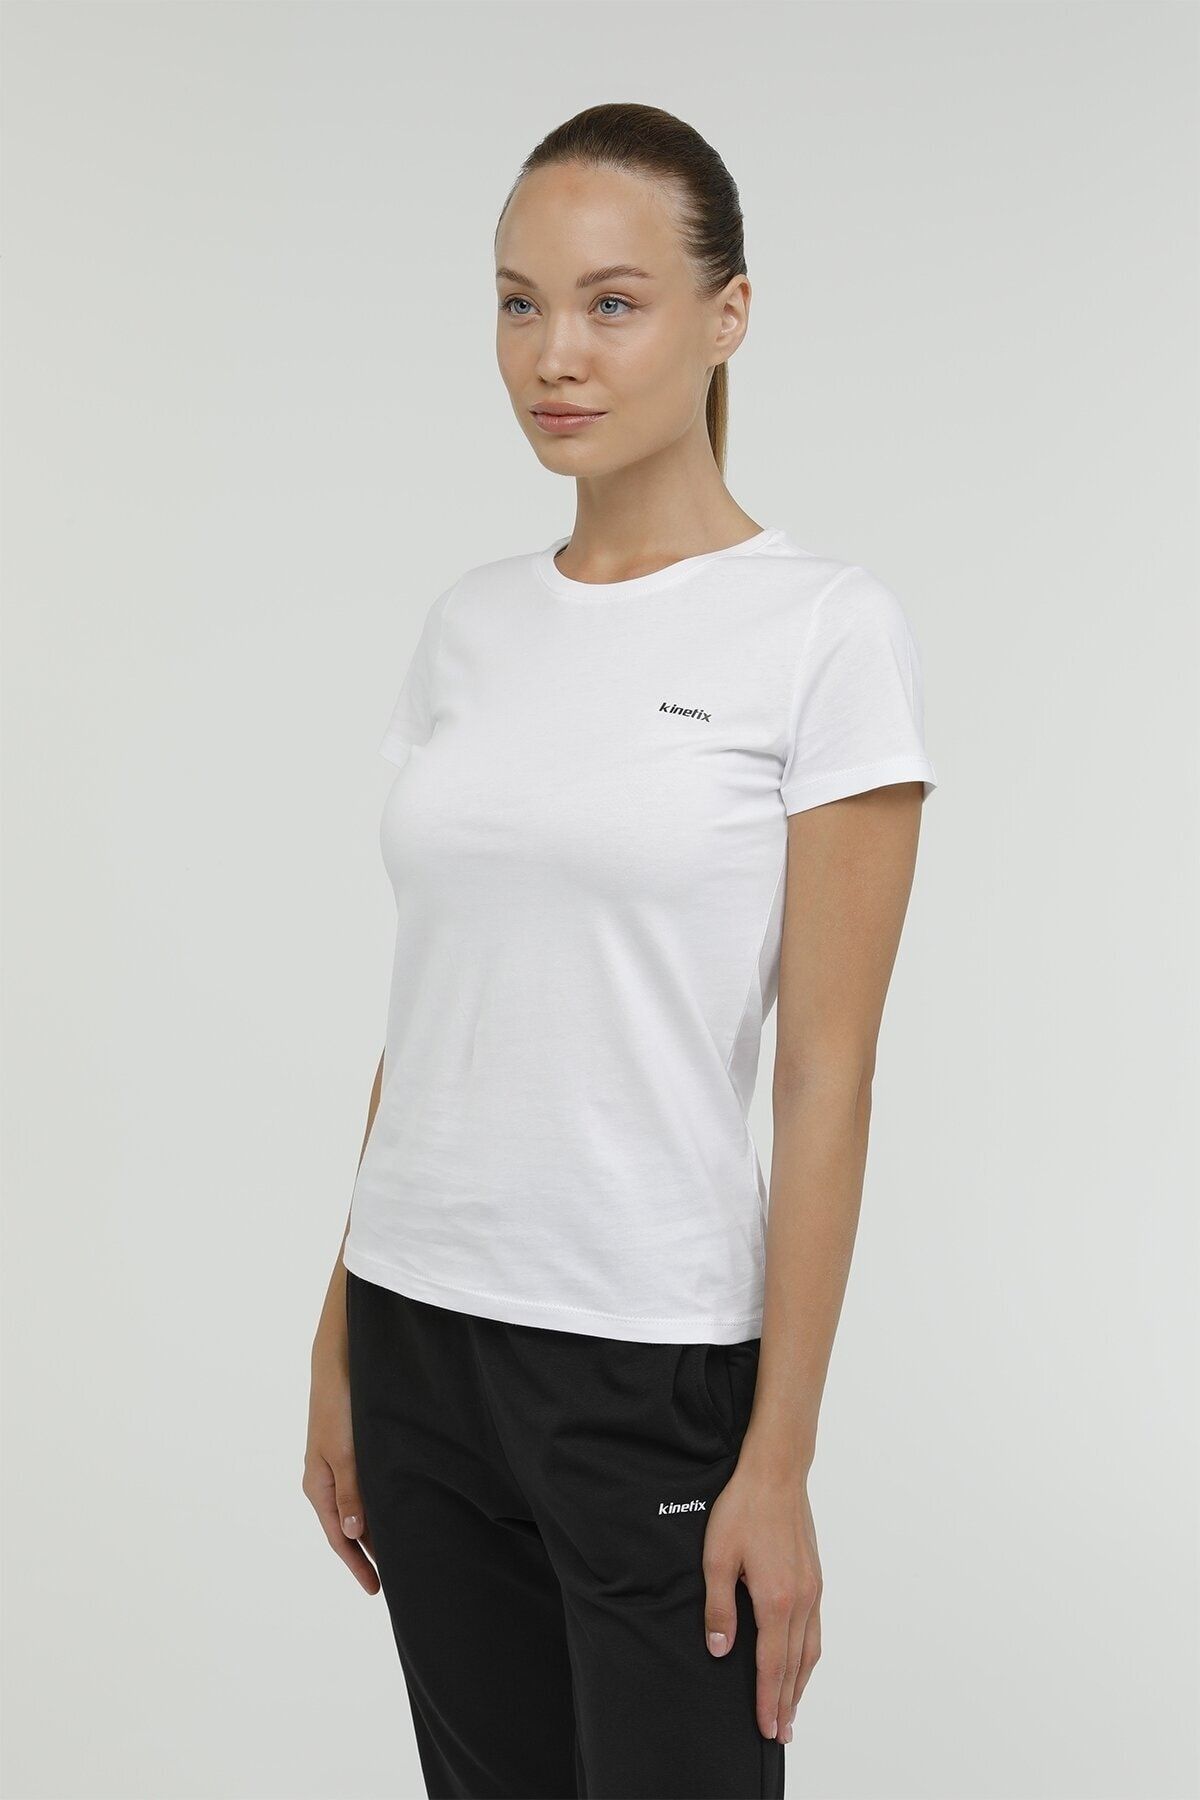 Kinetix W-sn226 Basıc C Neck T-sh Beyaz Kadın Kısa Kol T-shirt